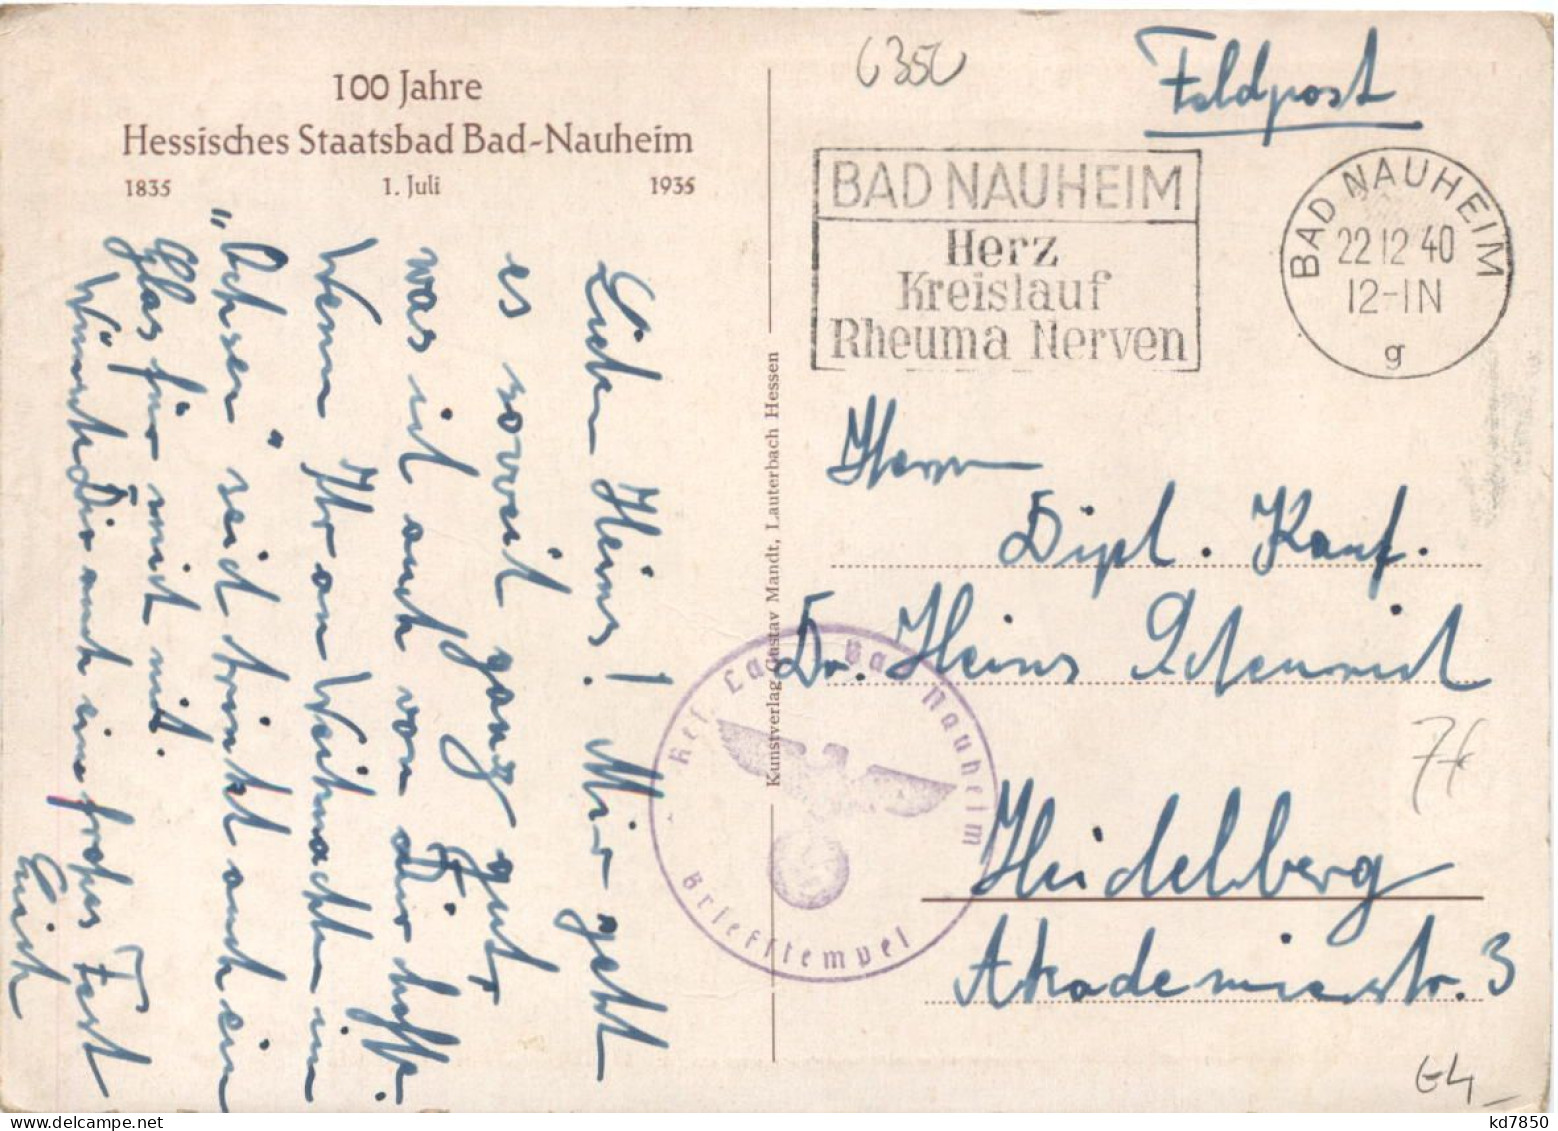 100 Jahre Bad Nauheim - Postkutsche - Bad Nauheim